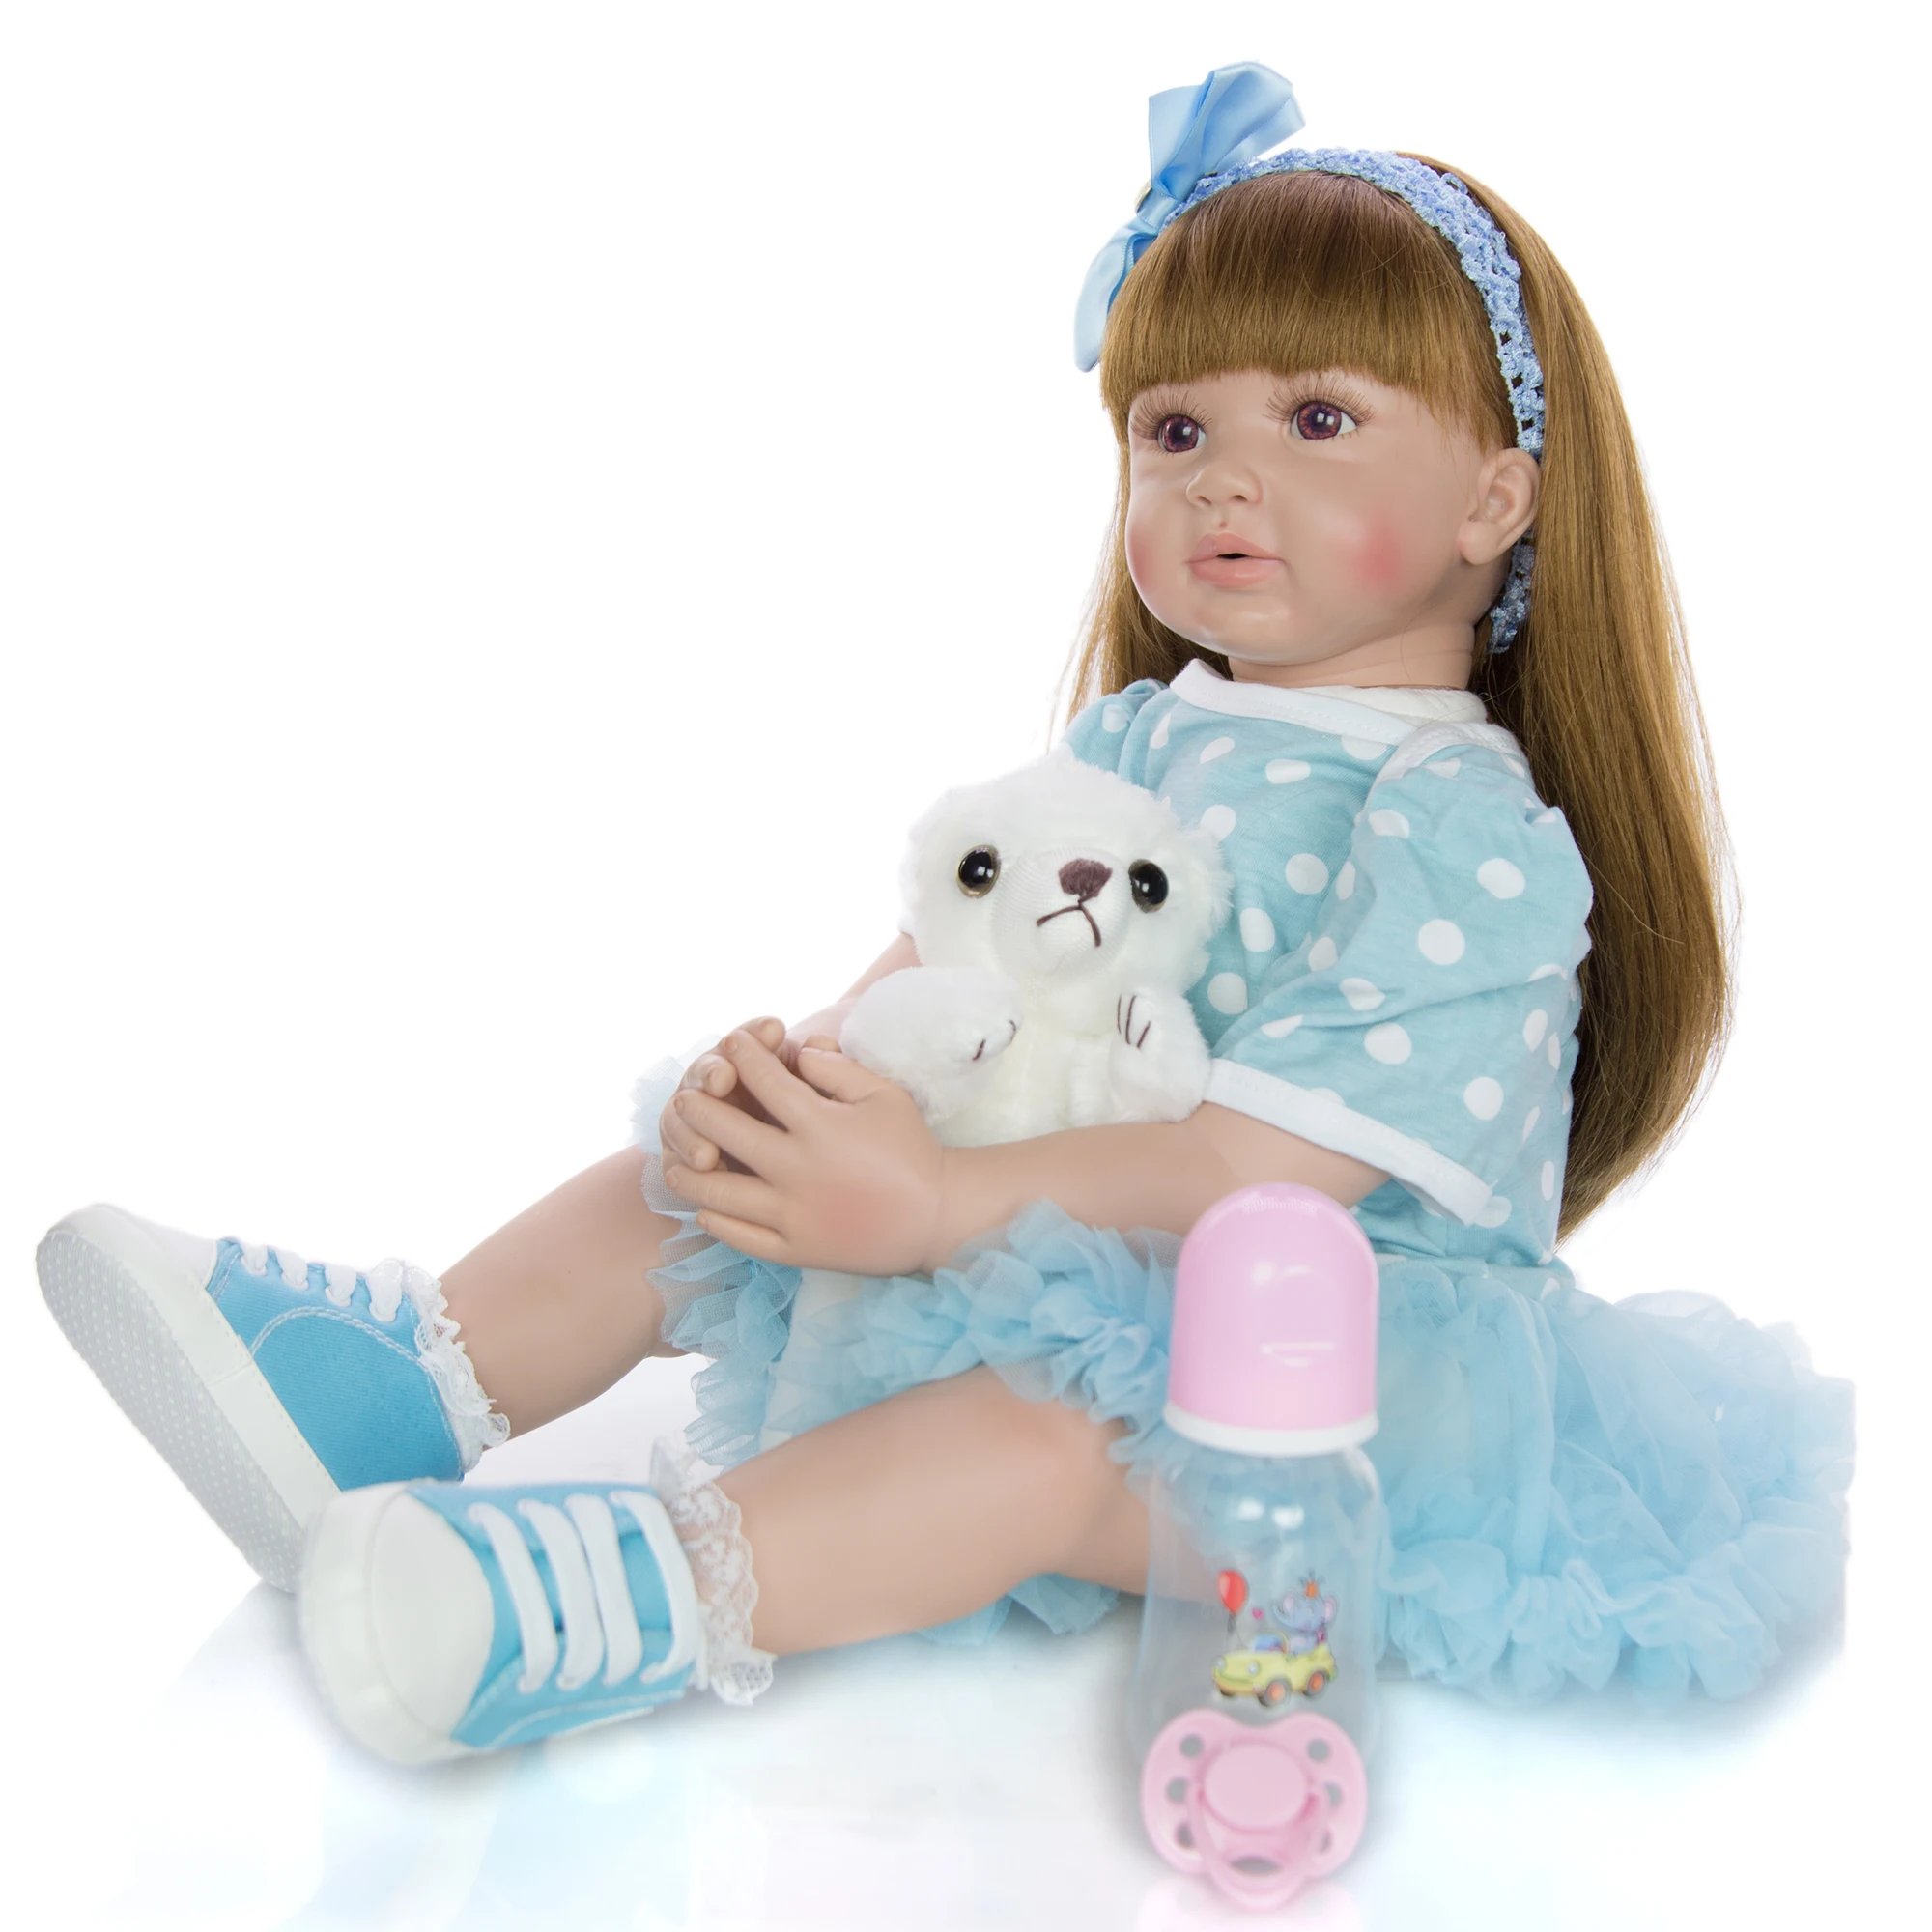 KEIUMI элегантный для новорожденных, для девочек действительно принцесса длинные волосы милые силиконовые виниловые Reborn Baby Doll 60 см Мода подарки для детей